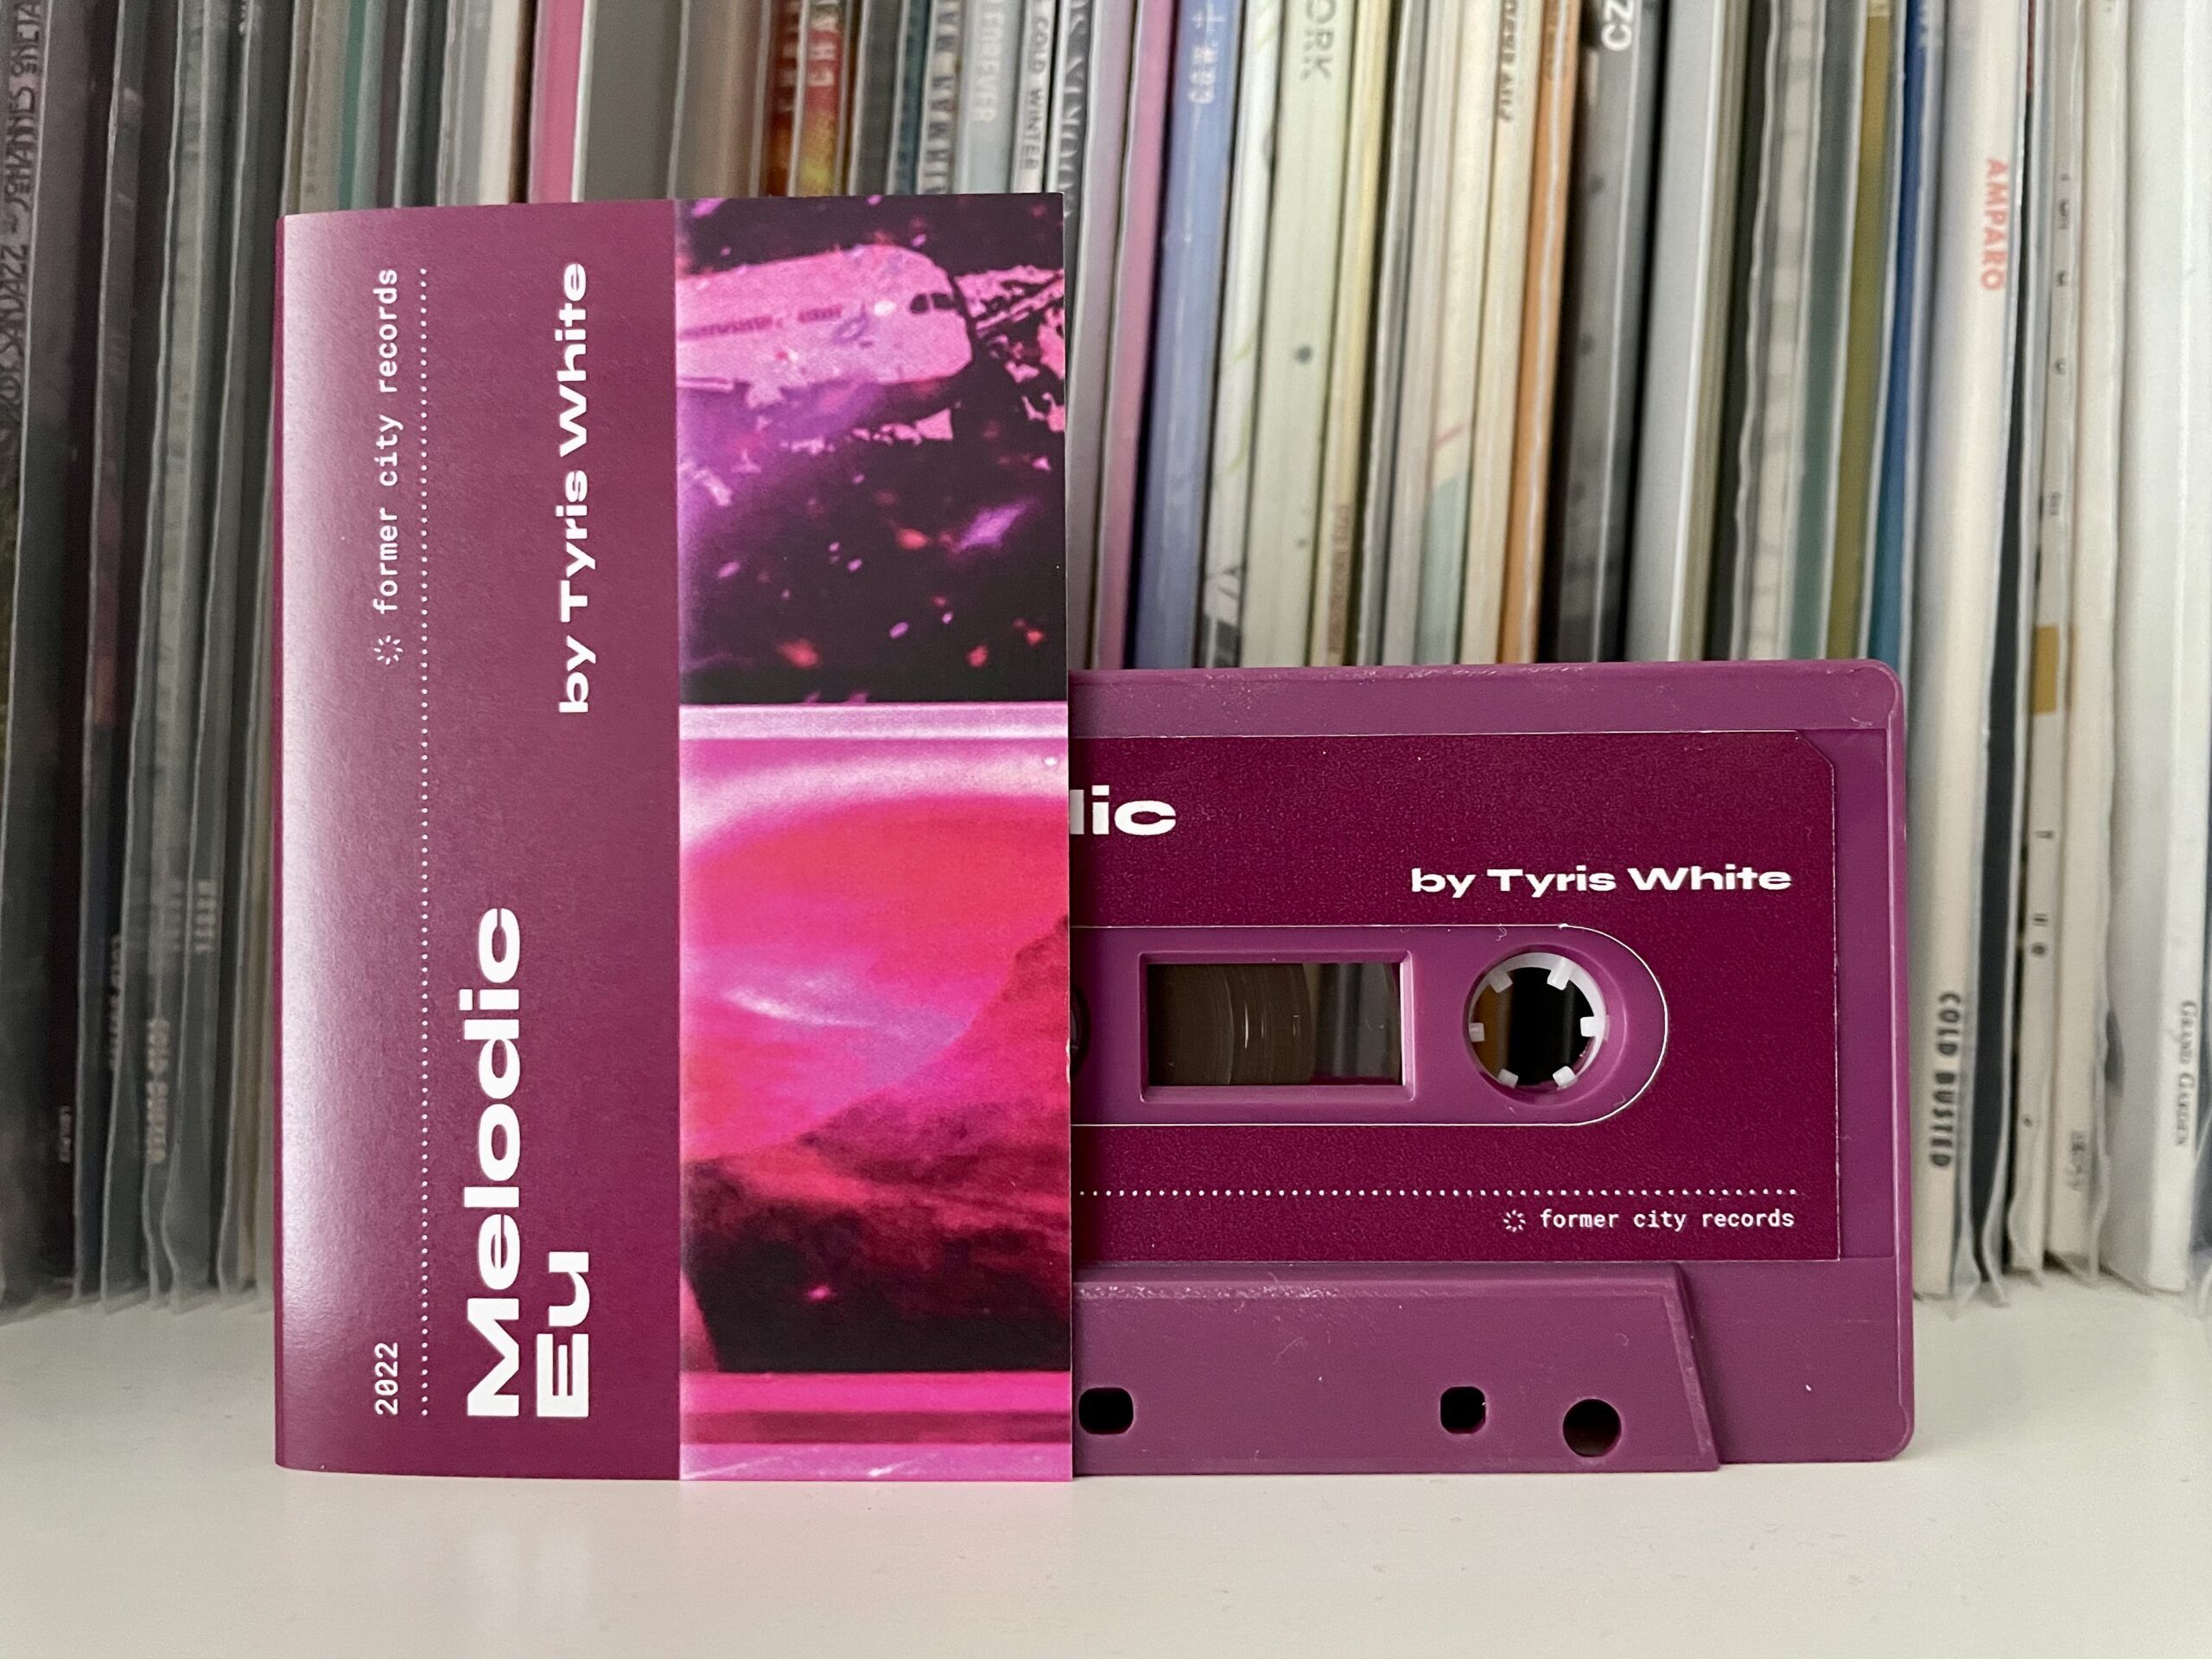 Tyris White - Melodic Eu (Former City Records) - Tape A